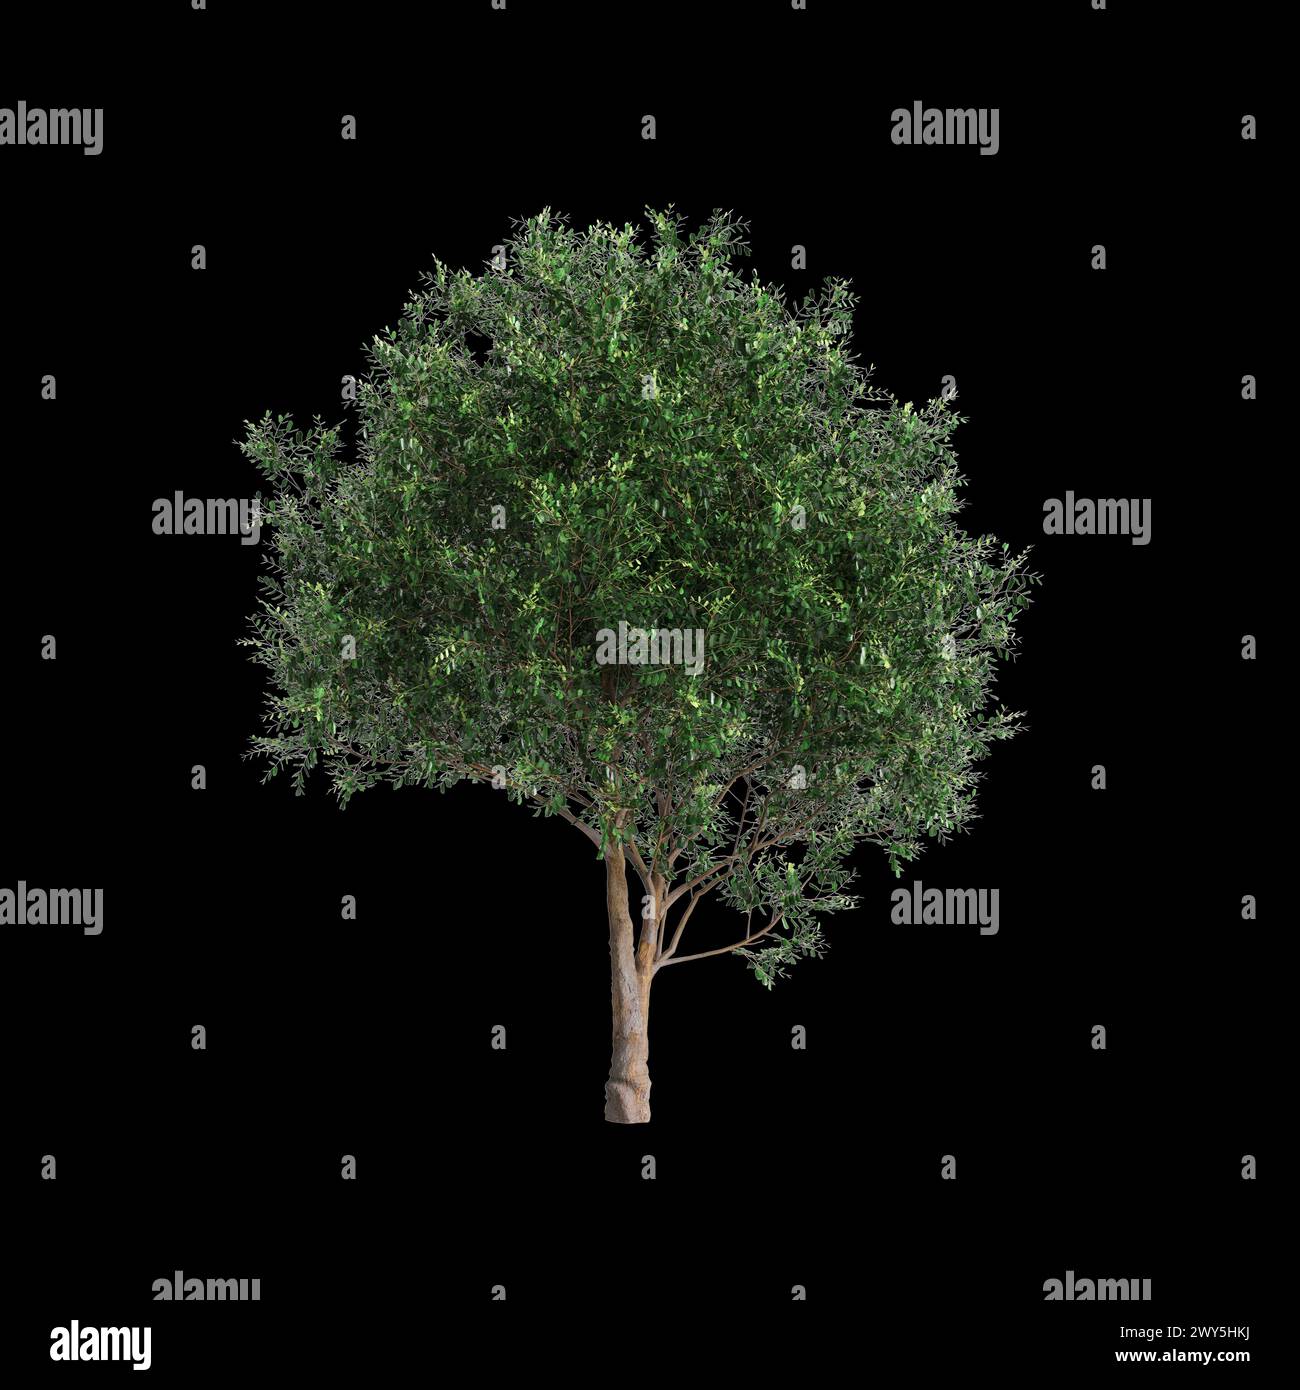 3d illustration of set Bergerocactus emoryi tree isolated on black background Stock Photo